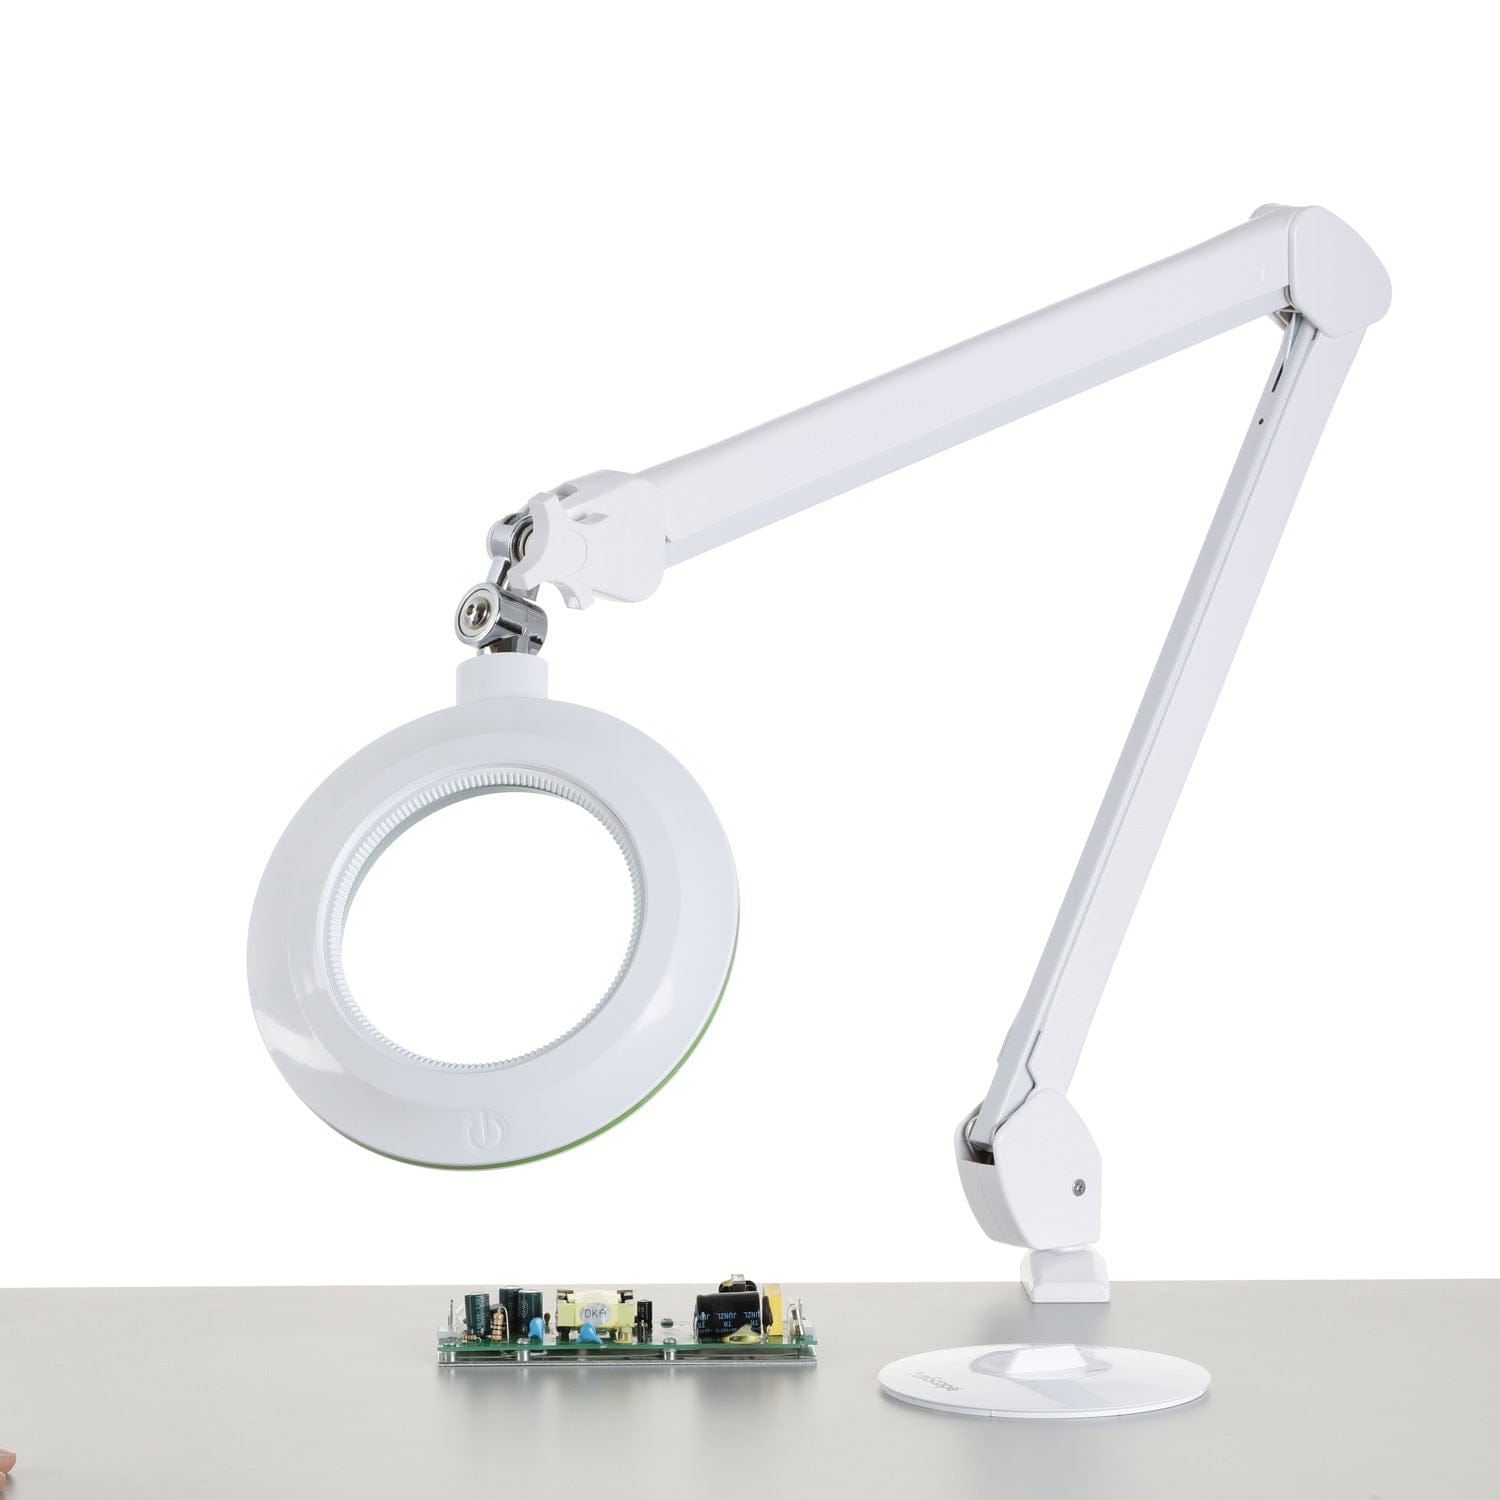 3 Diopter (1.75X Magnification) LED Desktop Magnifying Lamp, Adjustable Metal Gooseneck for Reading, Crafts, Hobbies